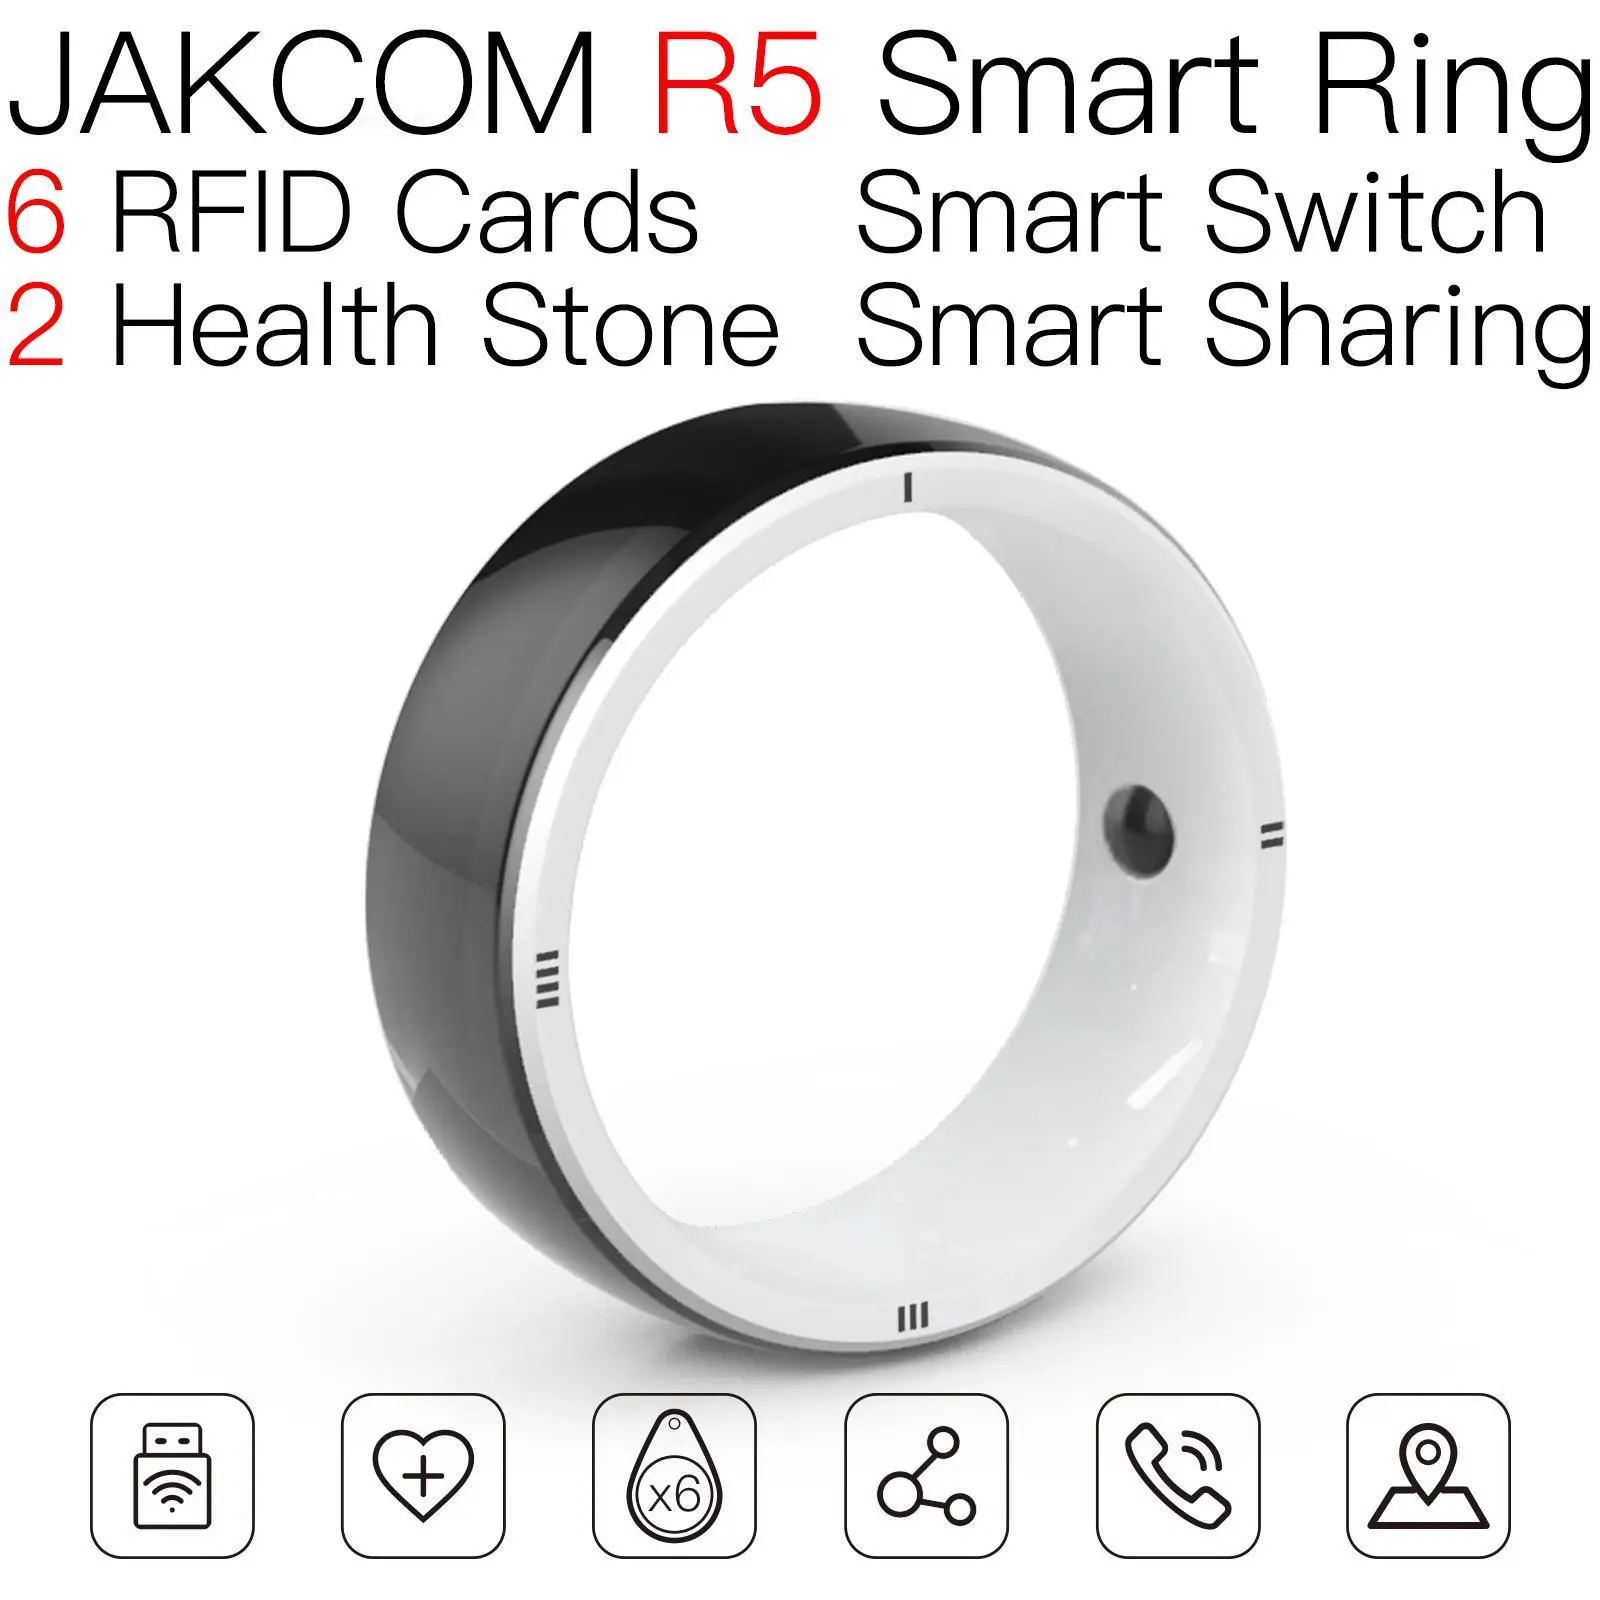 

Умное кольцо JAKCOM R5, красивое, чем программируемые бирки для записываемого микрочипа m26 plus note10s nfs, длинная подземная наклейка для транспортно...